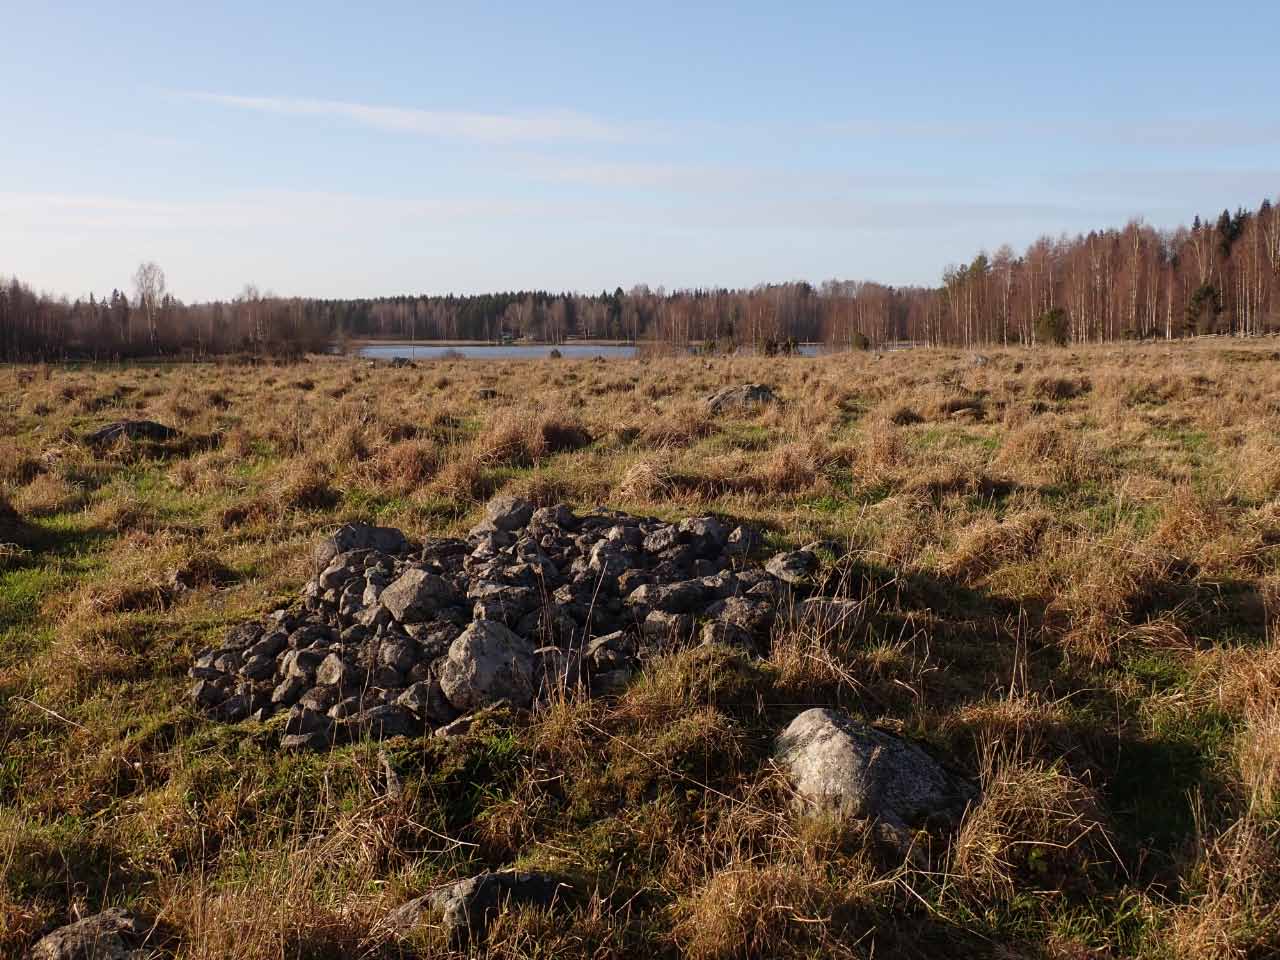 Kuva: Kiviröykkiö, ilmeisesti raivausröykkiö, historiallisella kylätontilla. Lahden museot / Päijät-Hämeen alueellinen vastuumuseo. CC BY 4.0 Hannu Poutiainen 6.11.2020